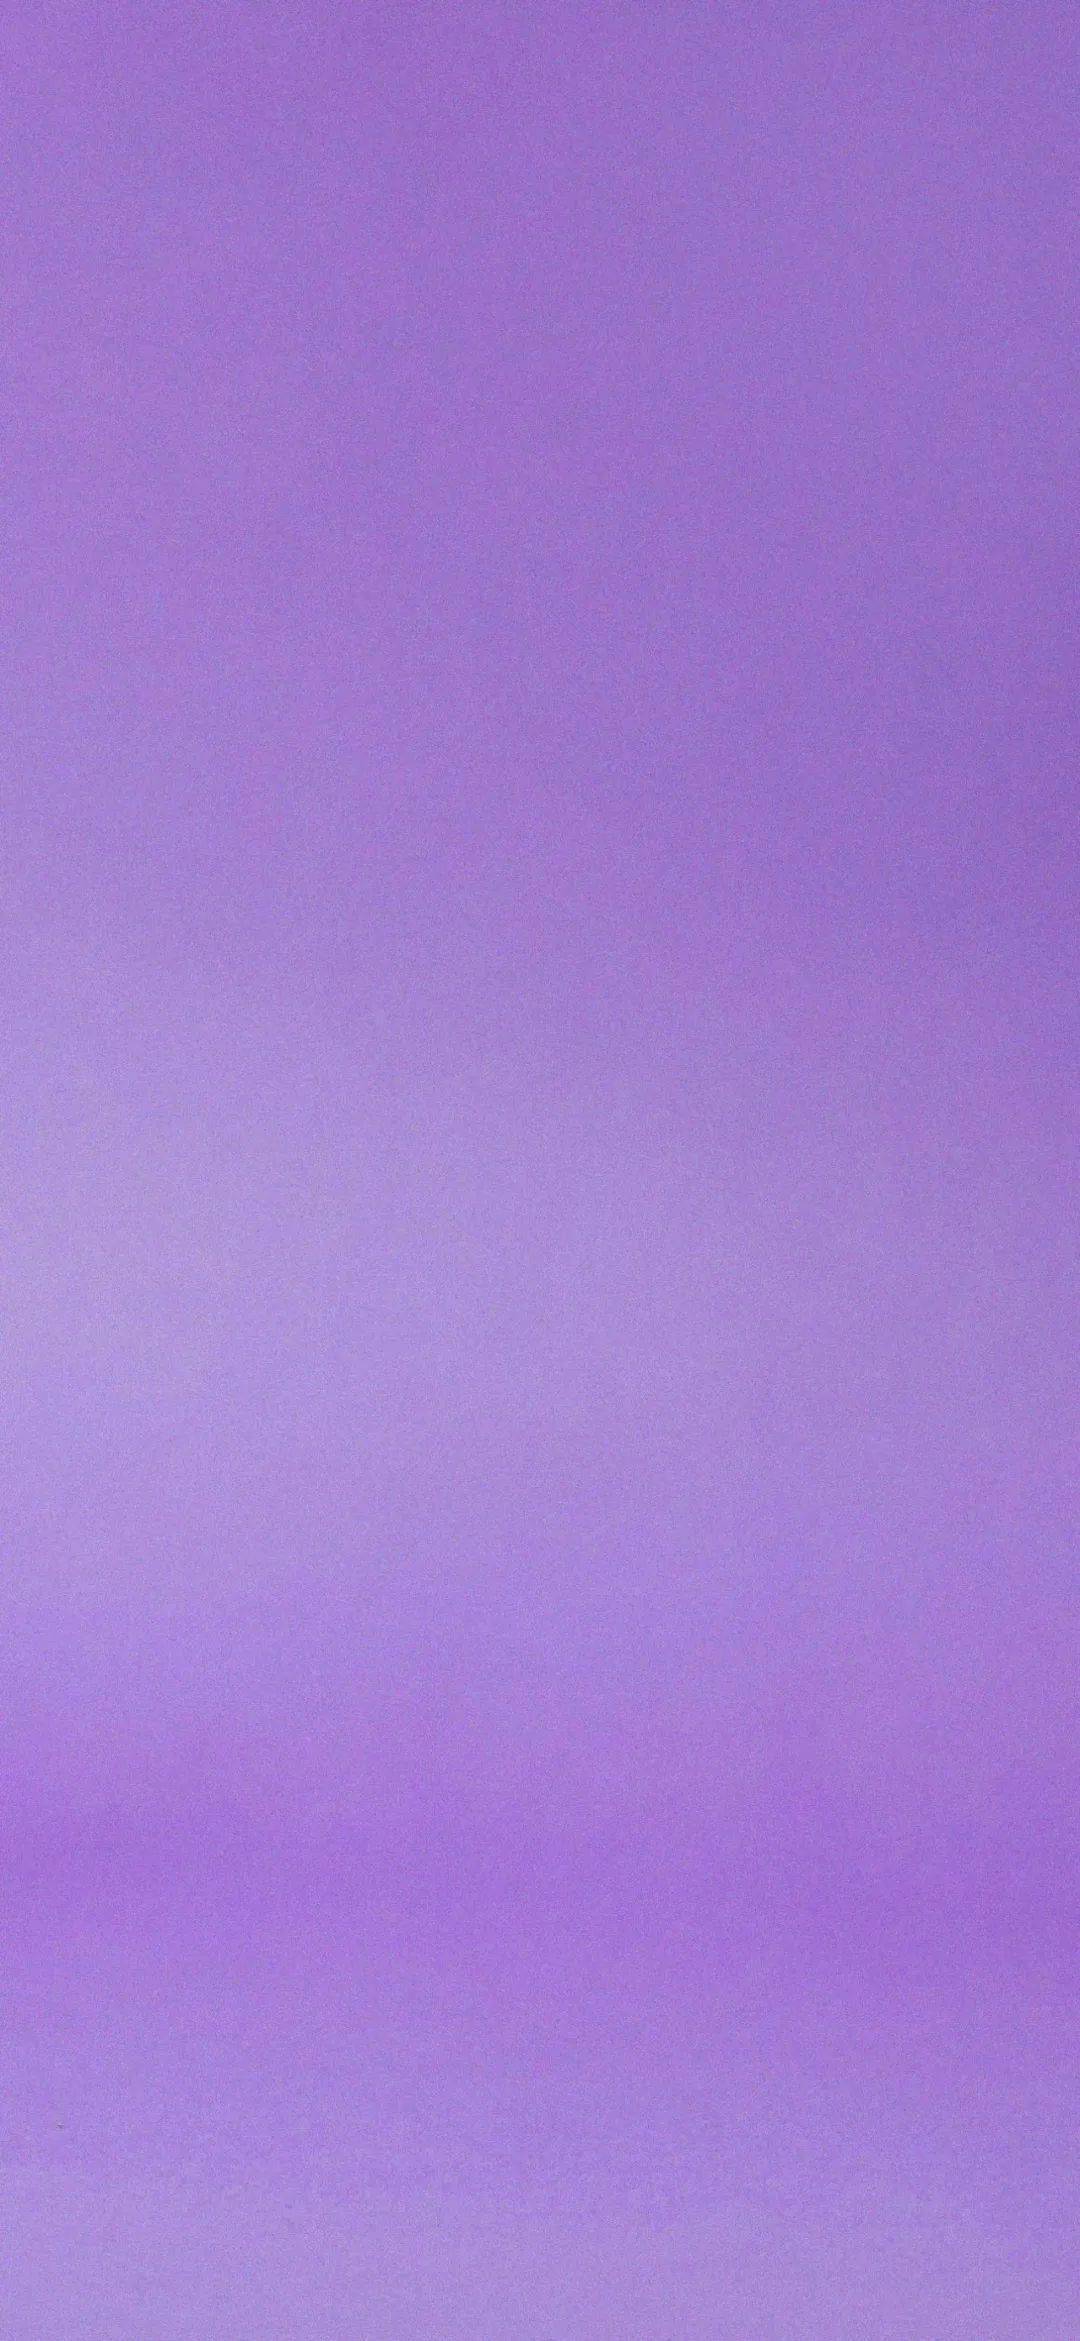 纯紫色壁纸不带图案图片